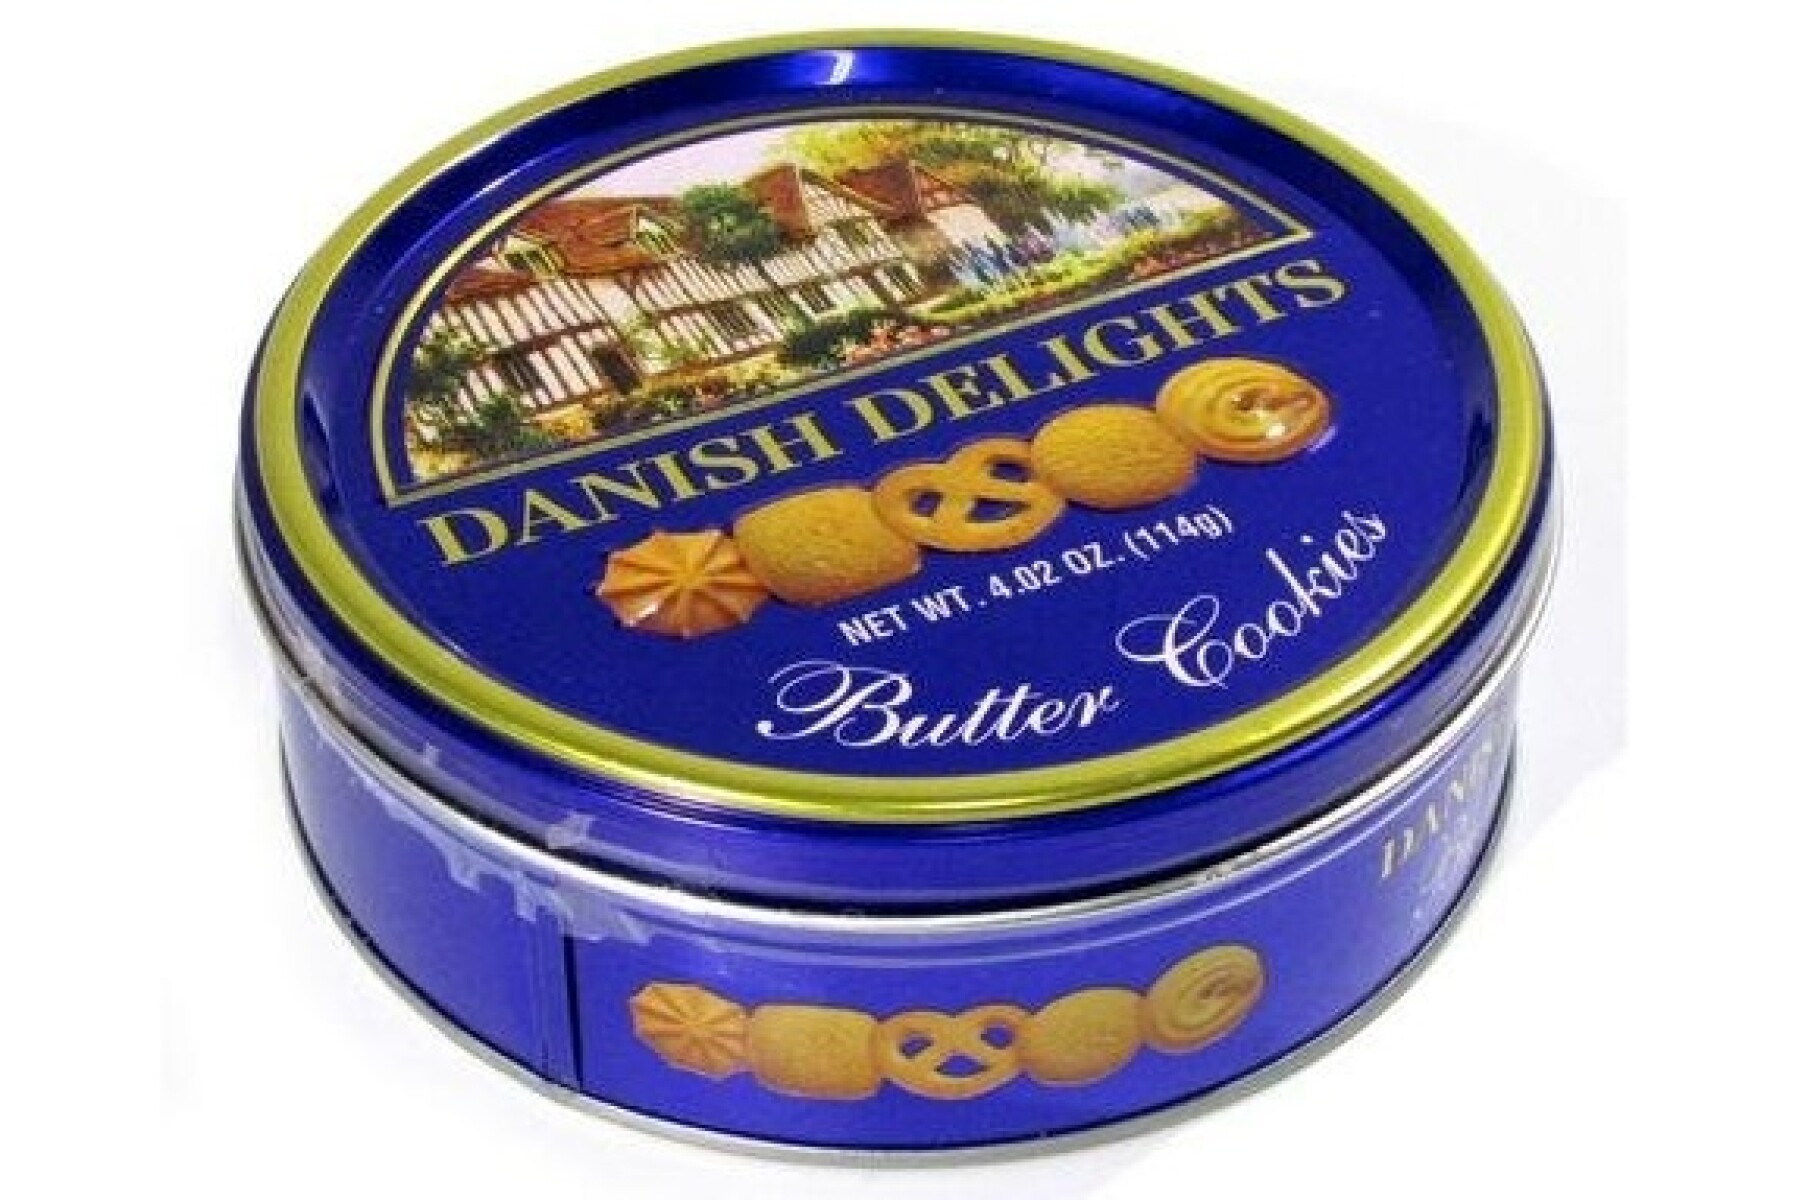 Galletas Danesas (Danish Butter Cookies) - PequeRecetas